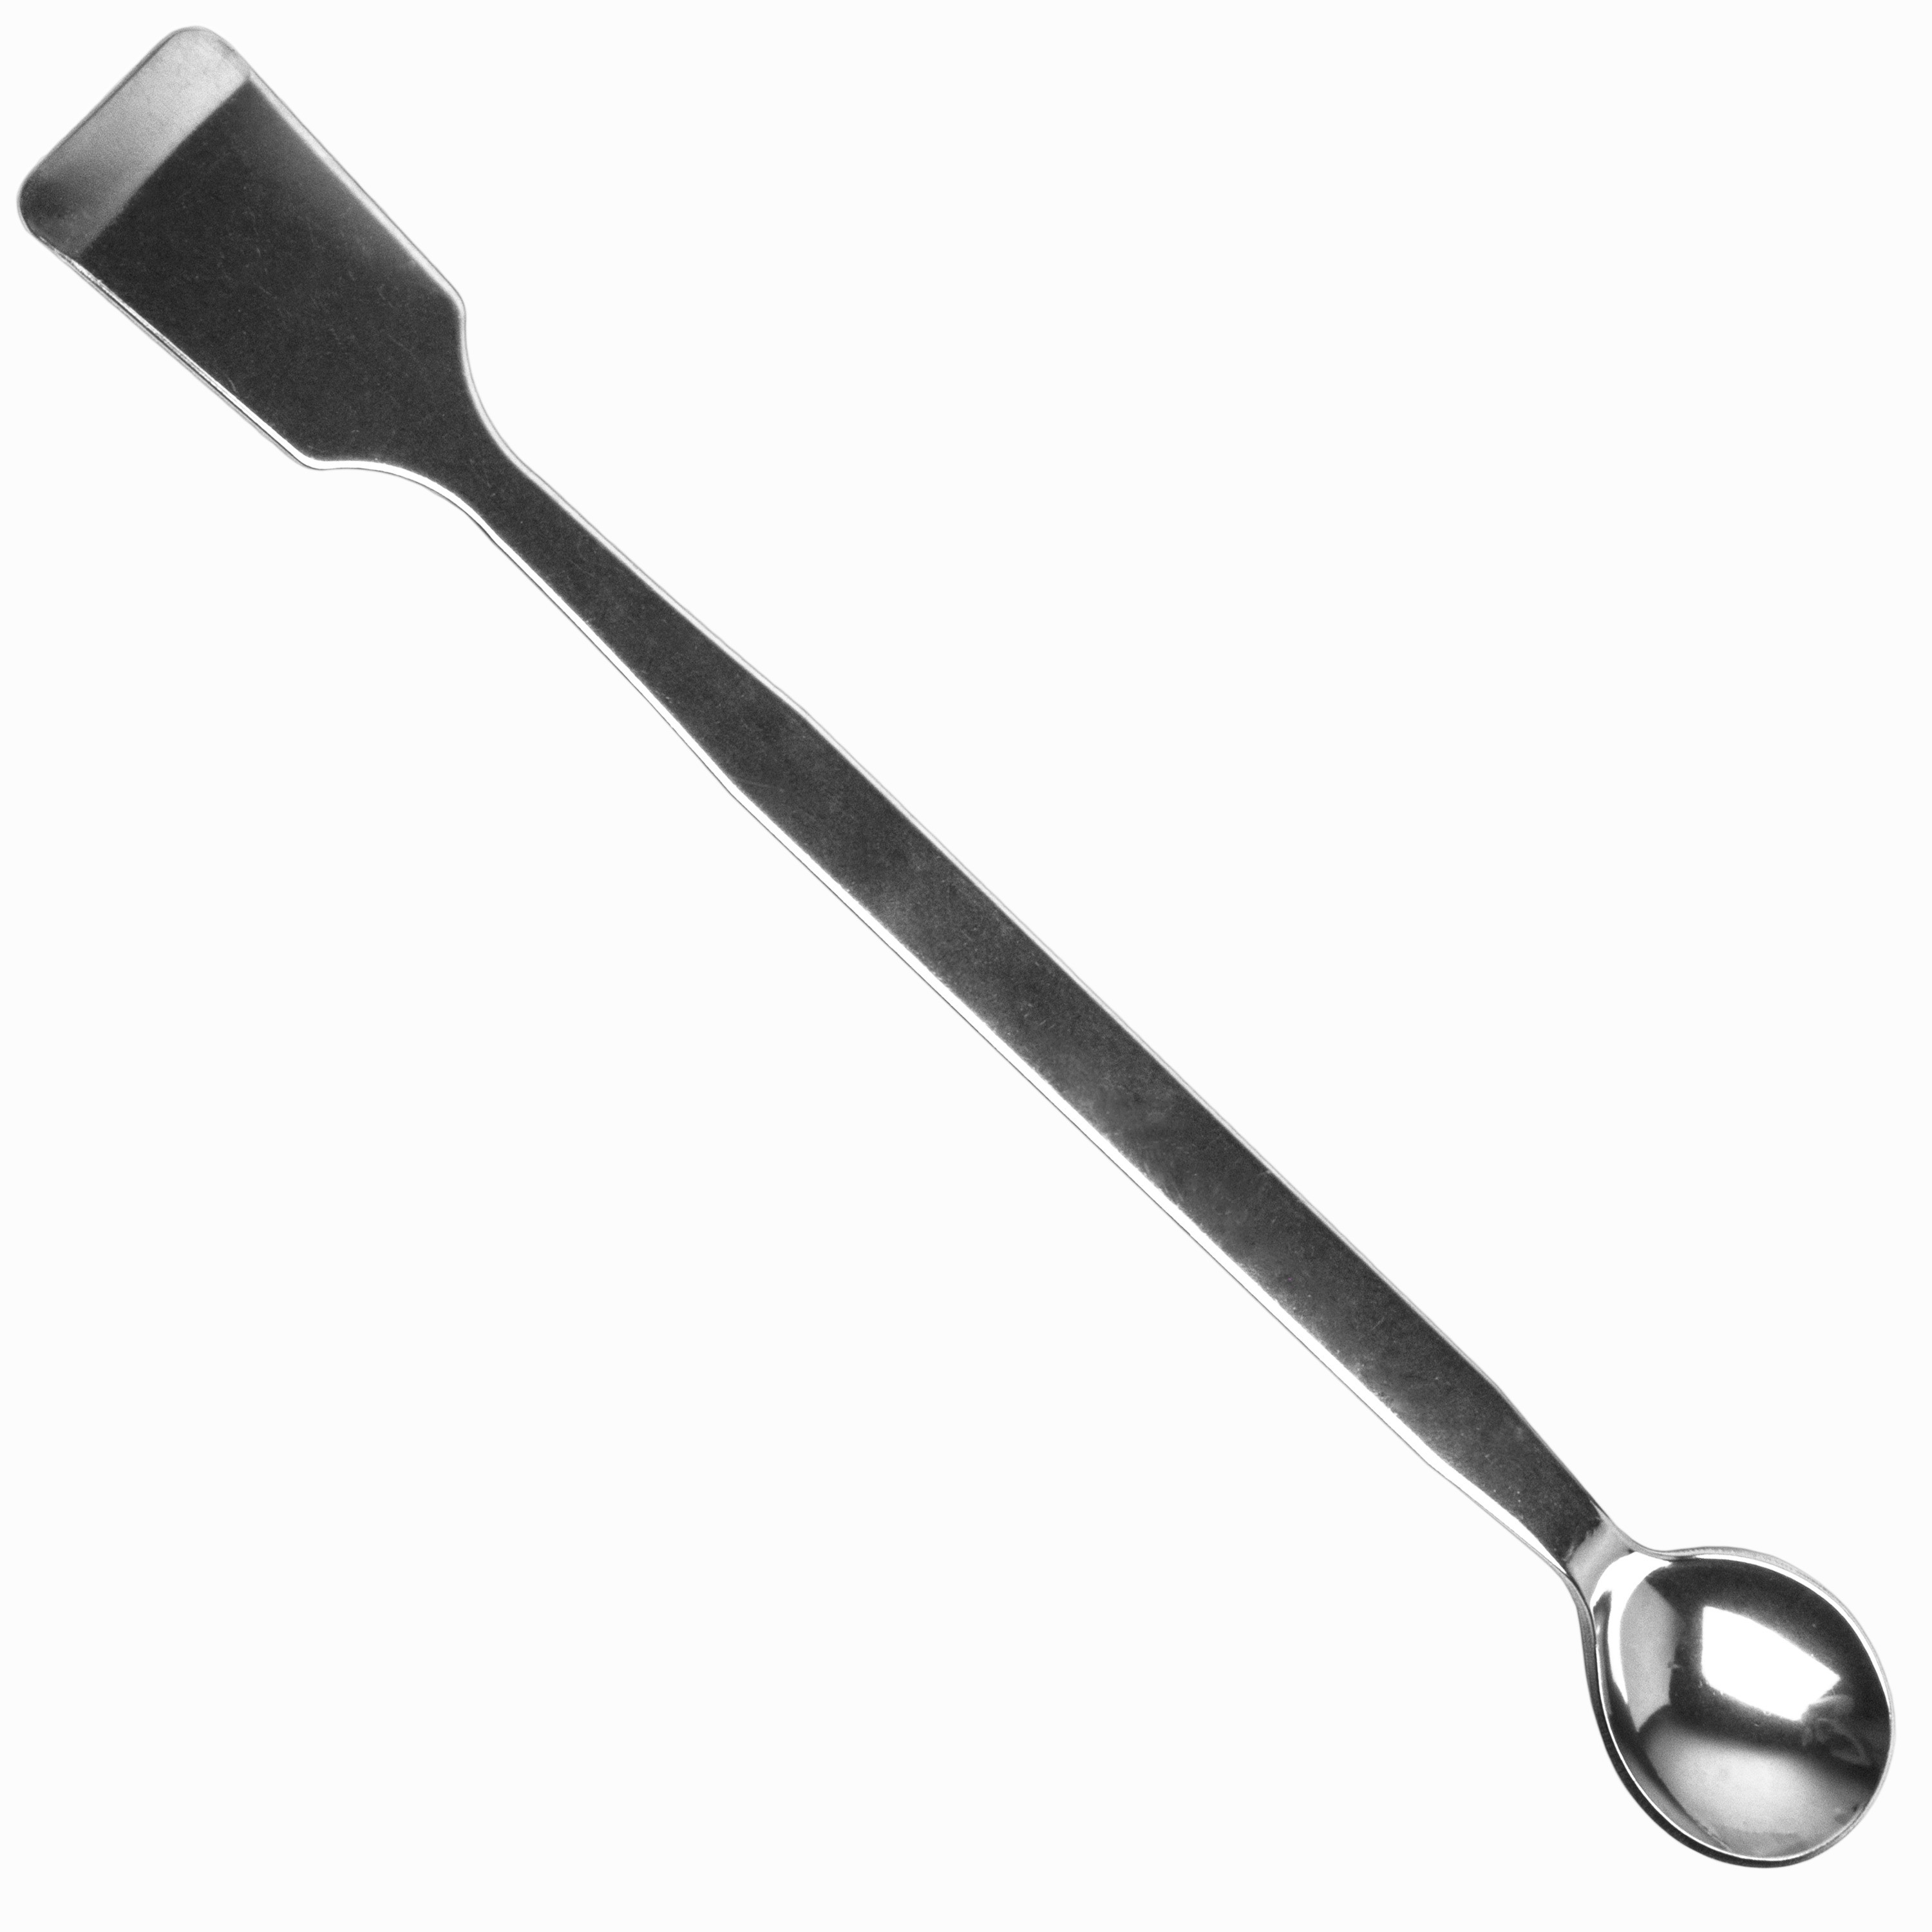 scientific spatula